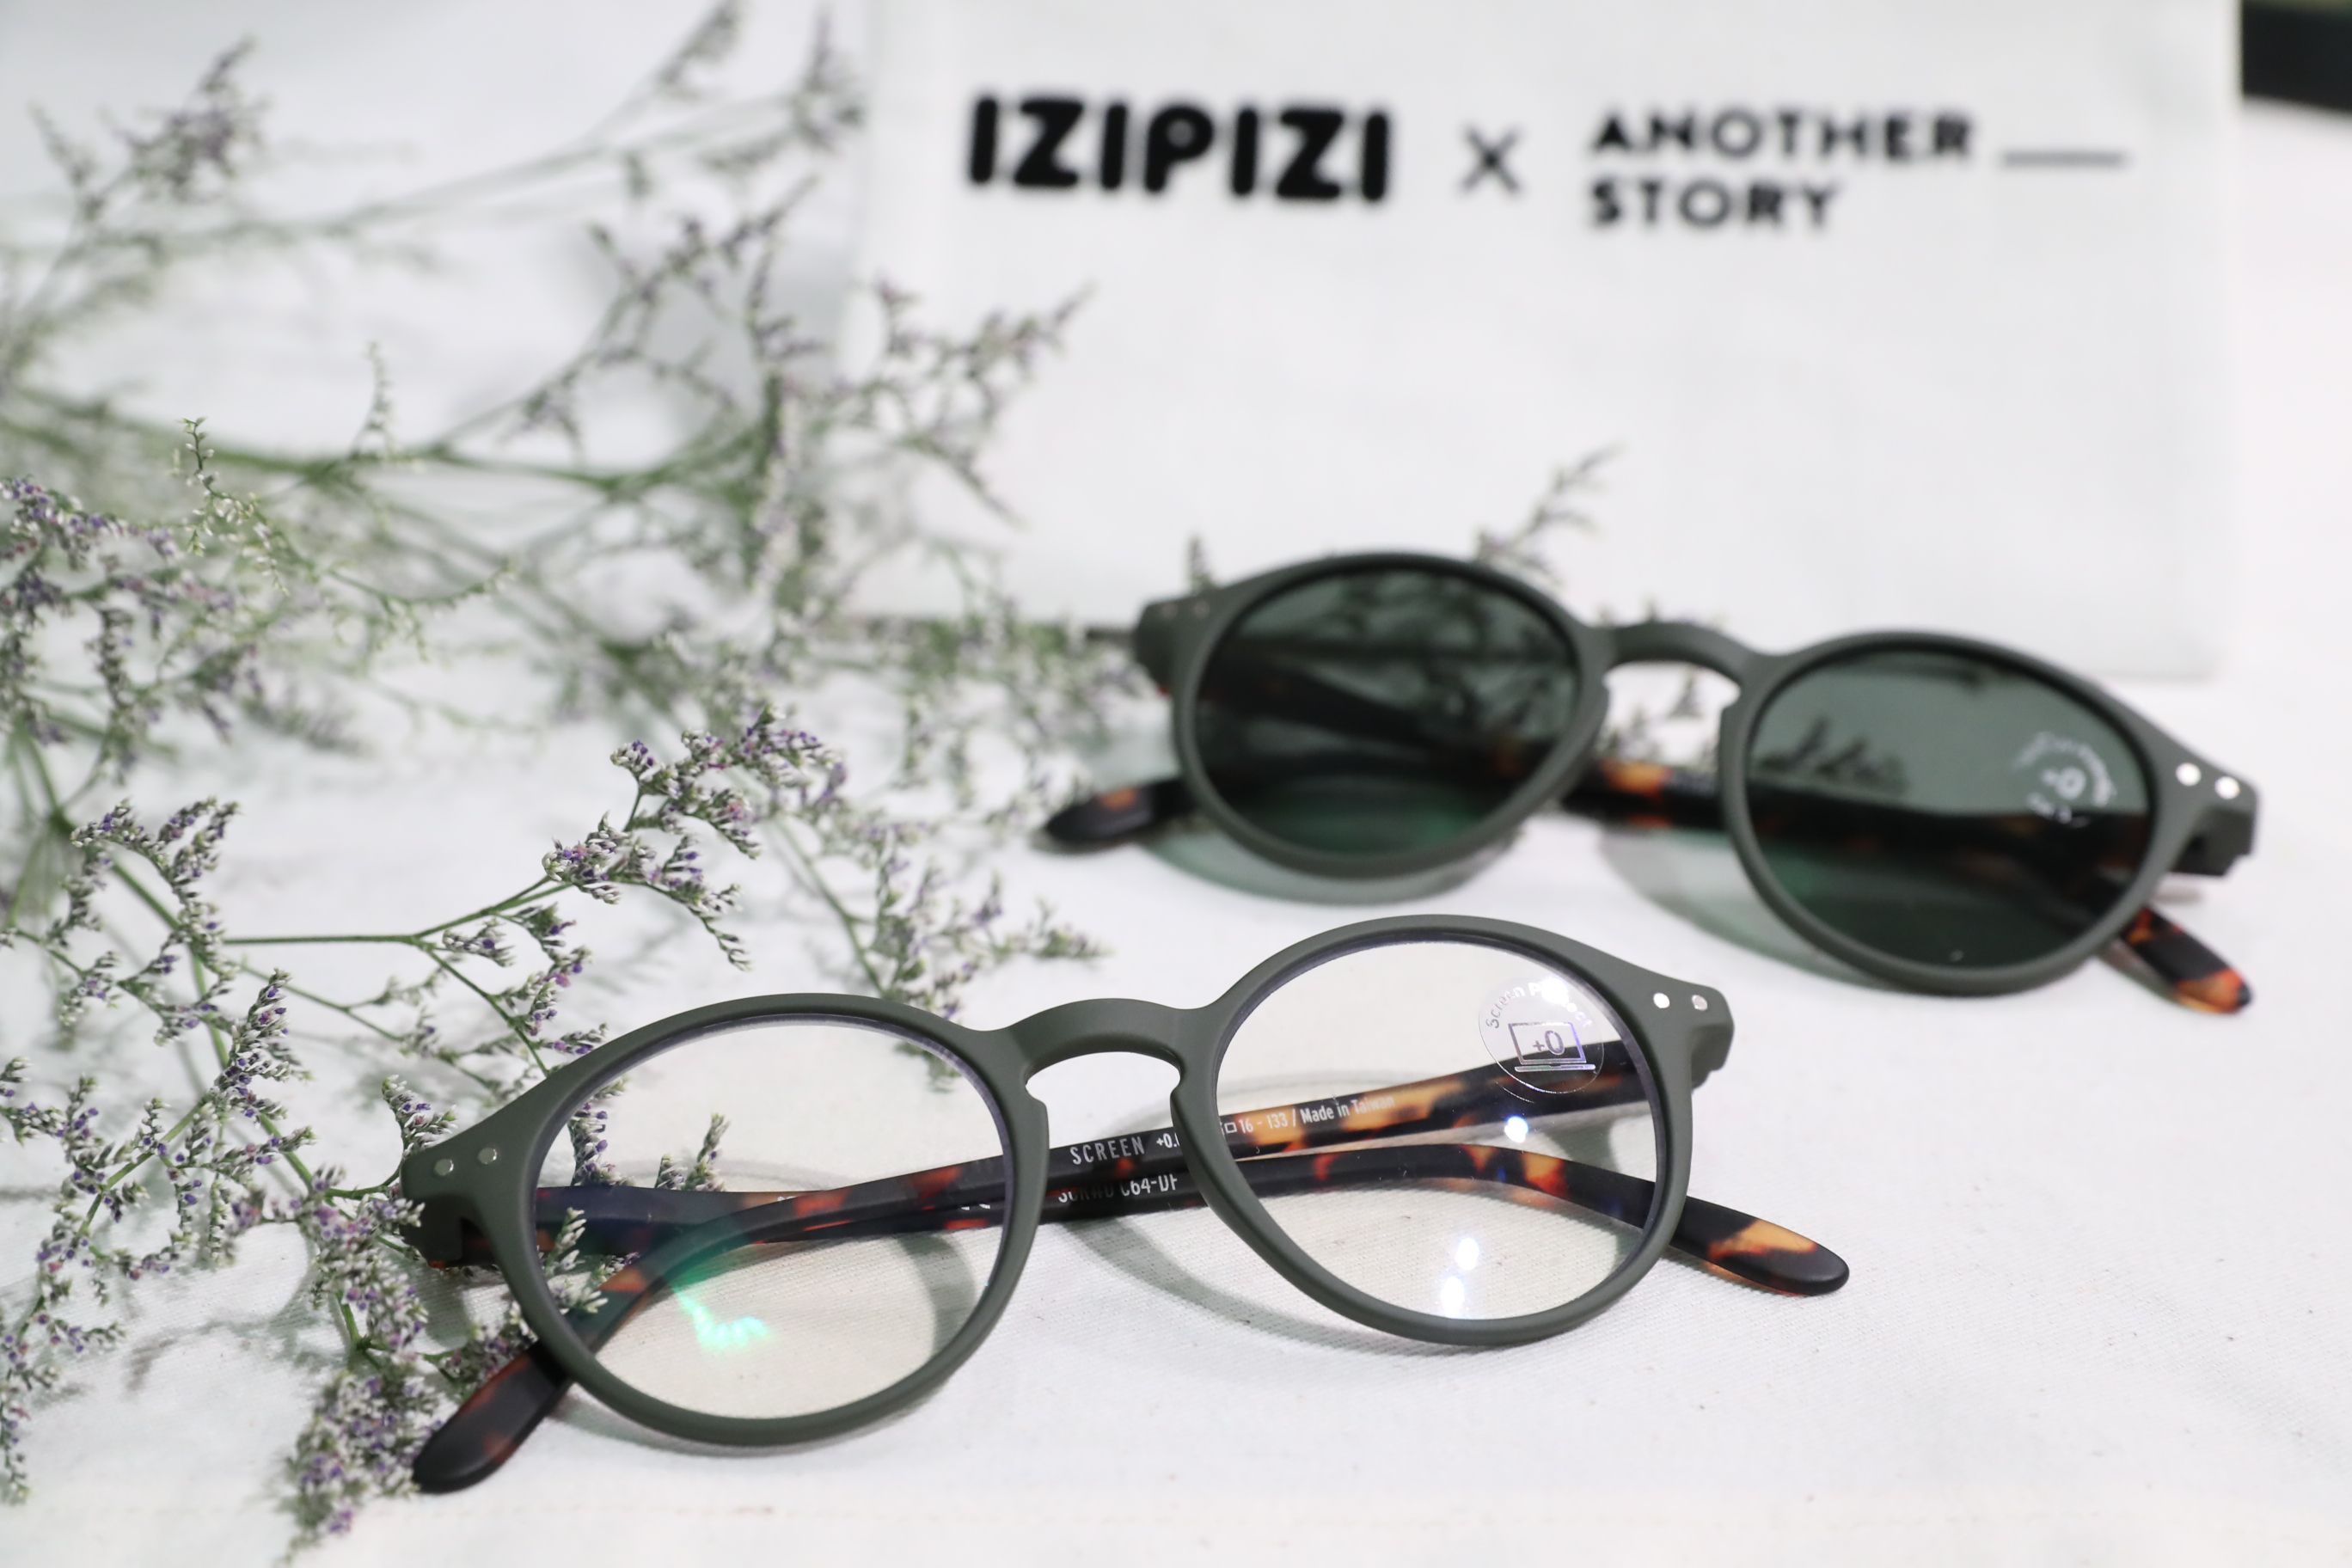 IZIPIZI x Another Story limited-edition eyewear launch